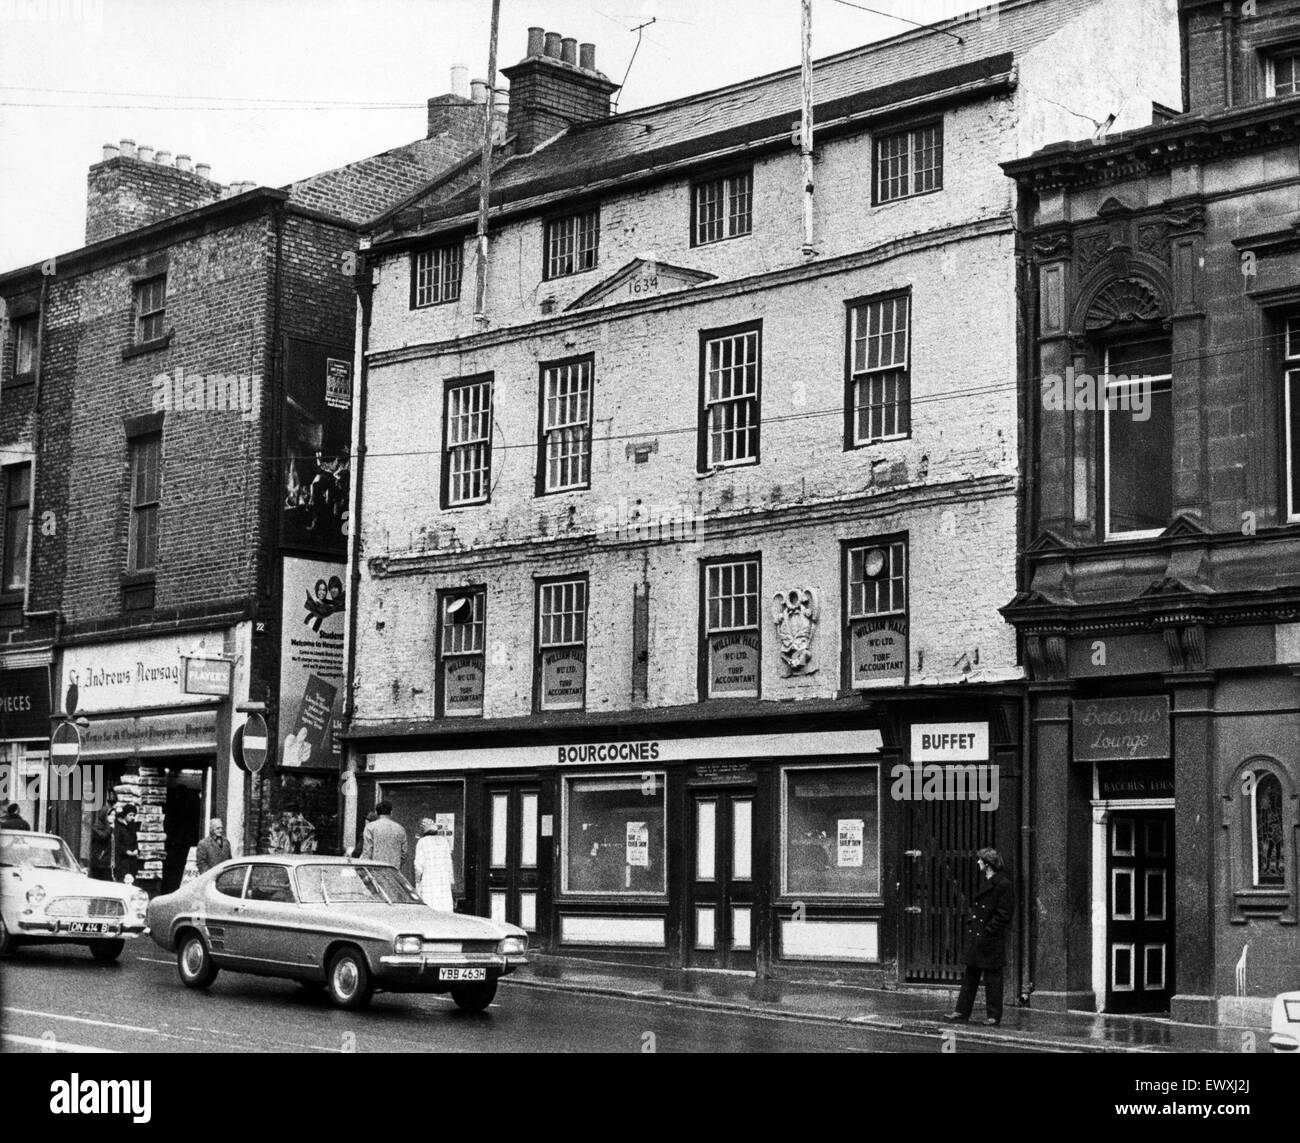 Bourgognes Public House, Newgate Street, Newcastle, 23 octobre 1971. Banque D'Images